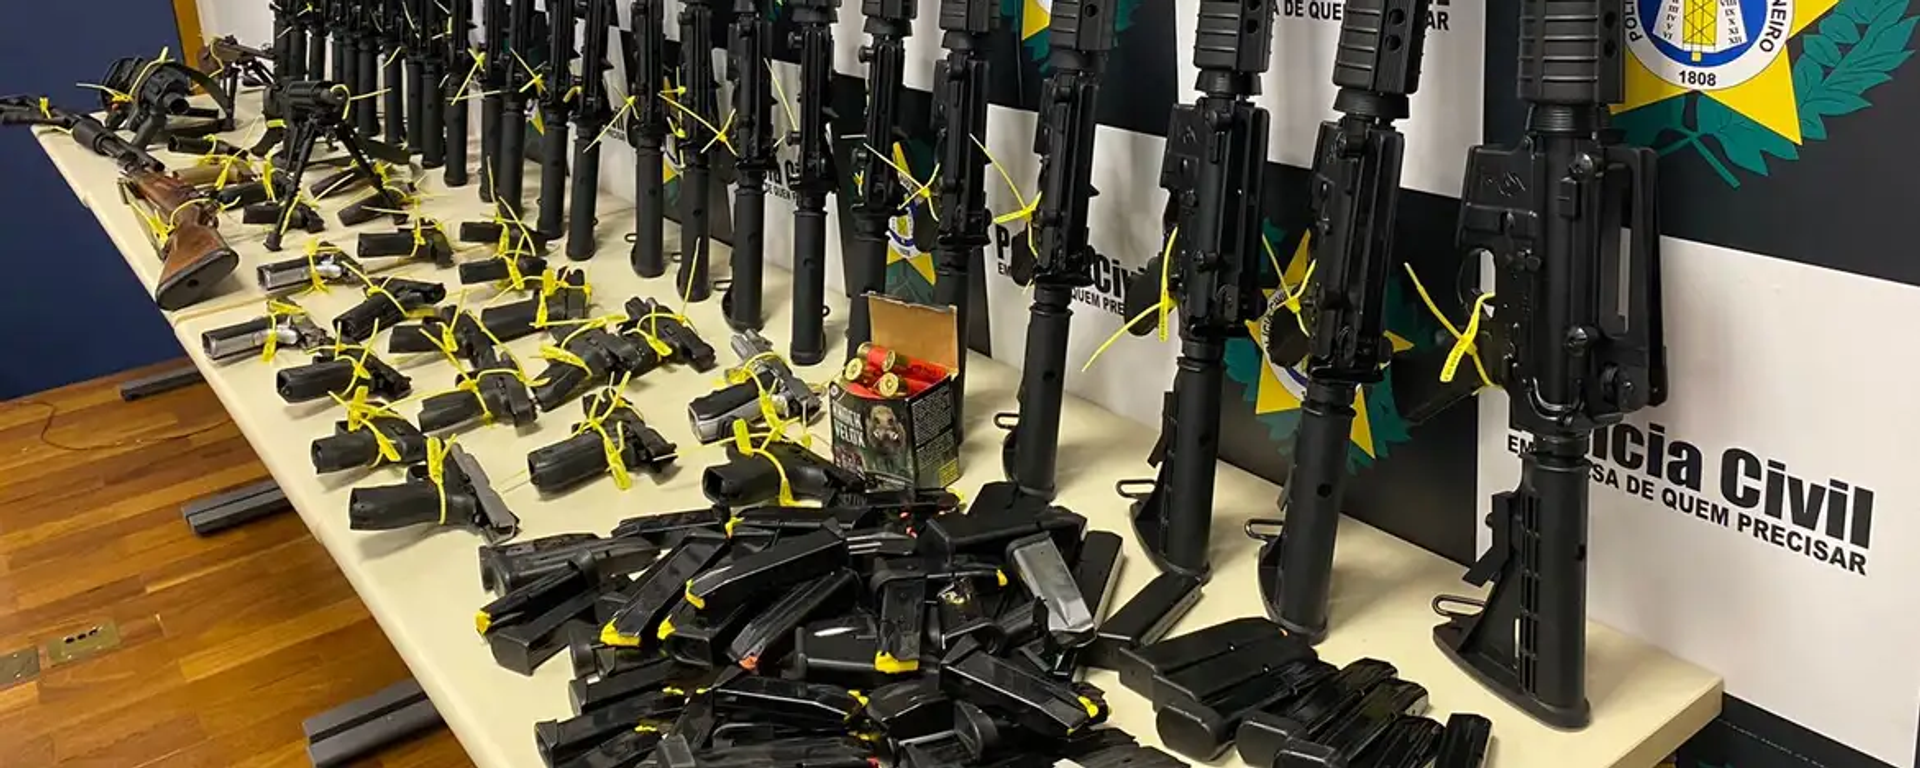 Fuzis e demais armas de fogo apreendidas pela Polícia Civil durante operações. Rio de Janeiro, novembro de 2023 - Sputnik Brasil, 1920, 14.12.2023